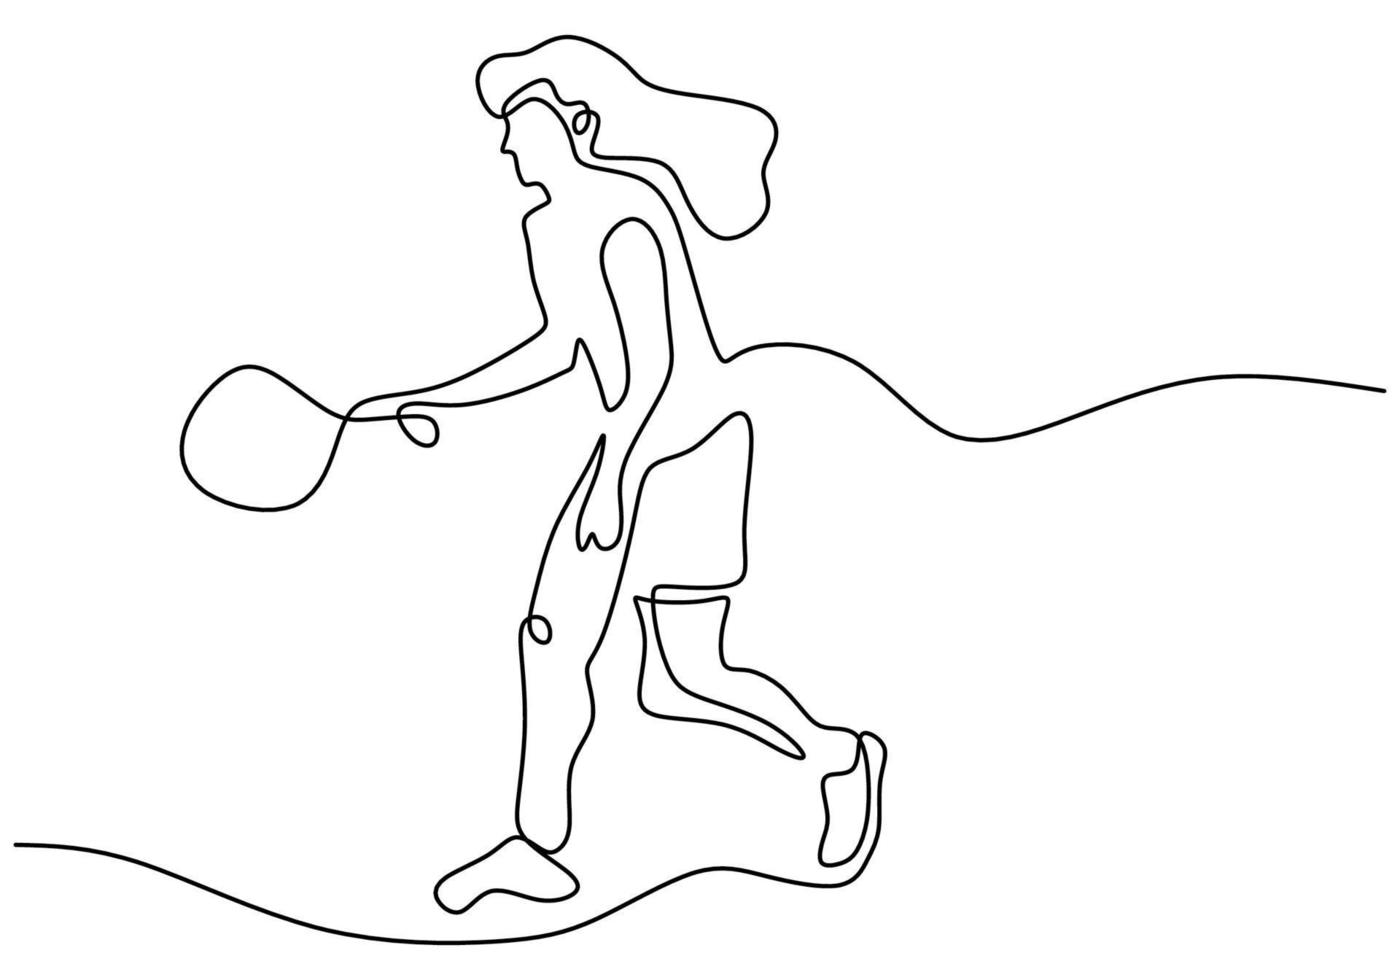 uma única linha de desenho de tênis jovem enérgico segurando a raquete e pronto para bater a bola isolada no fundo branco. conceito de treinamento esportivo com estilo de minimalismo. ilustração de desenho vetorial vetor